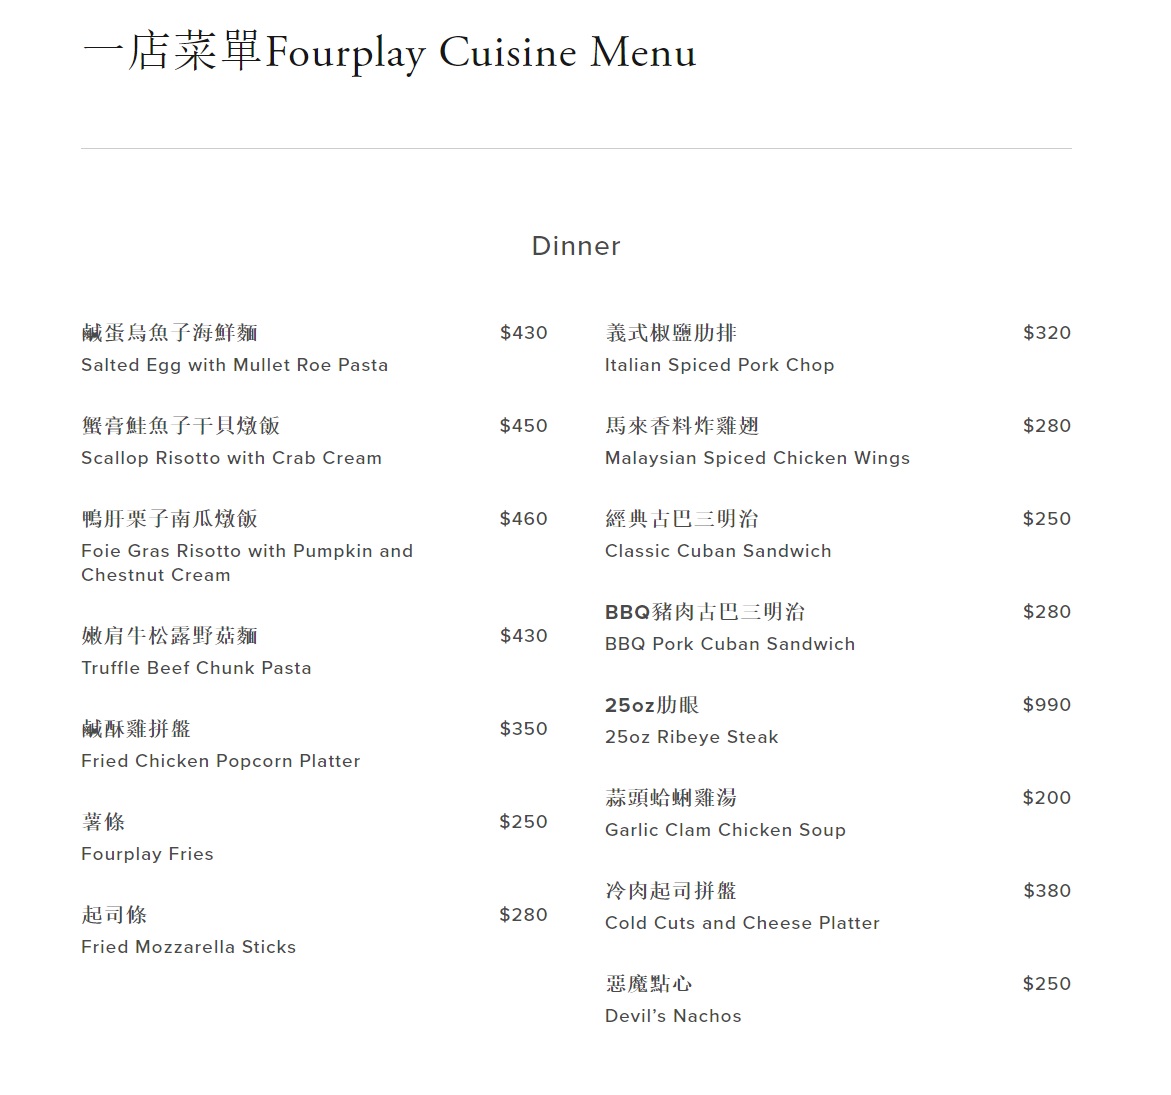 Fourplay menu